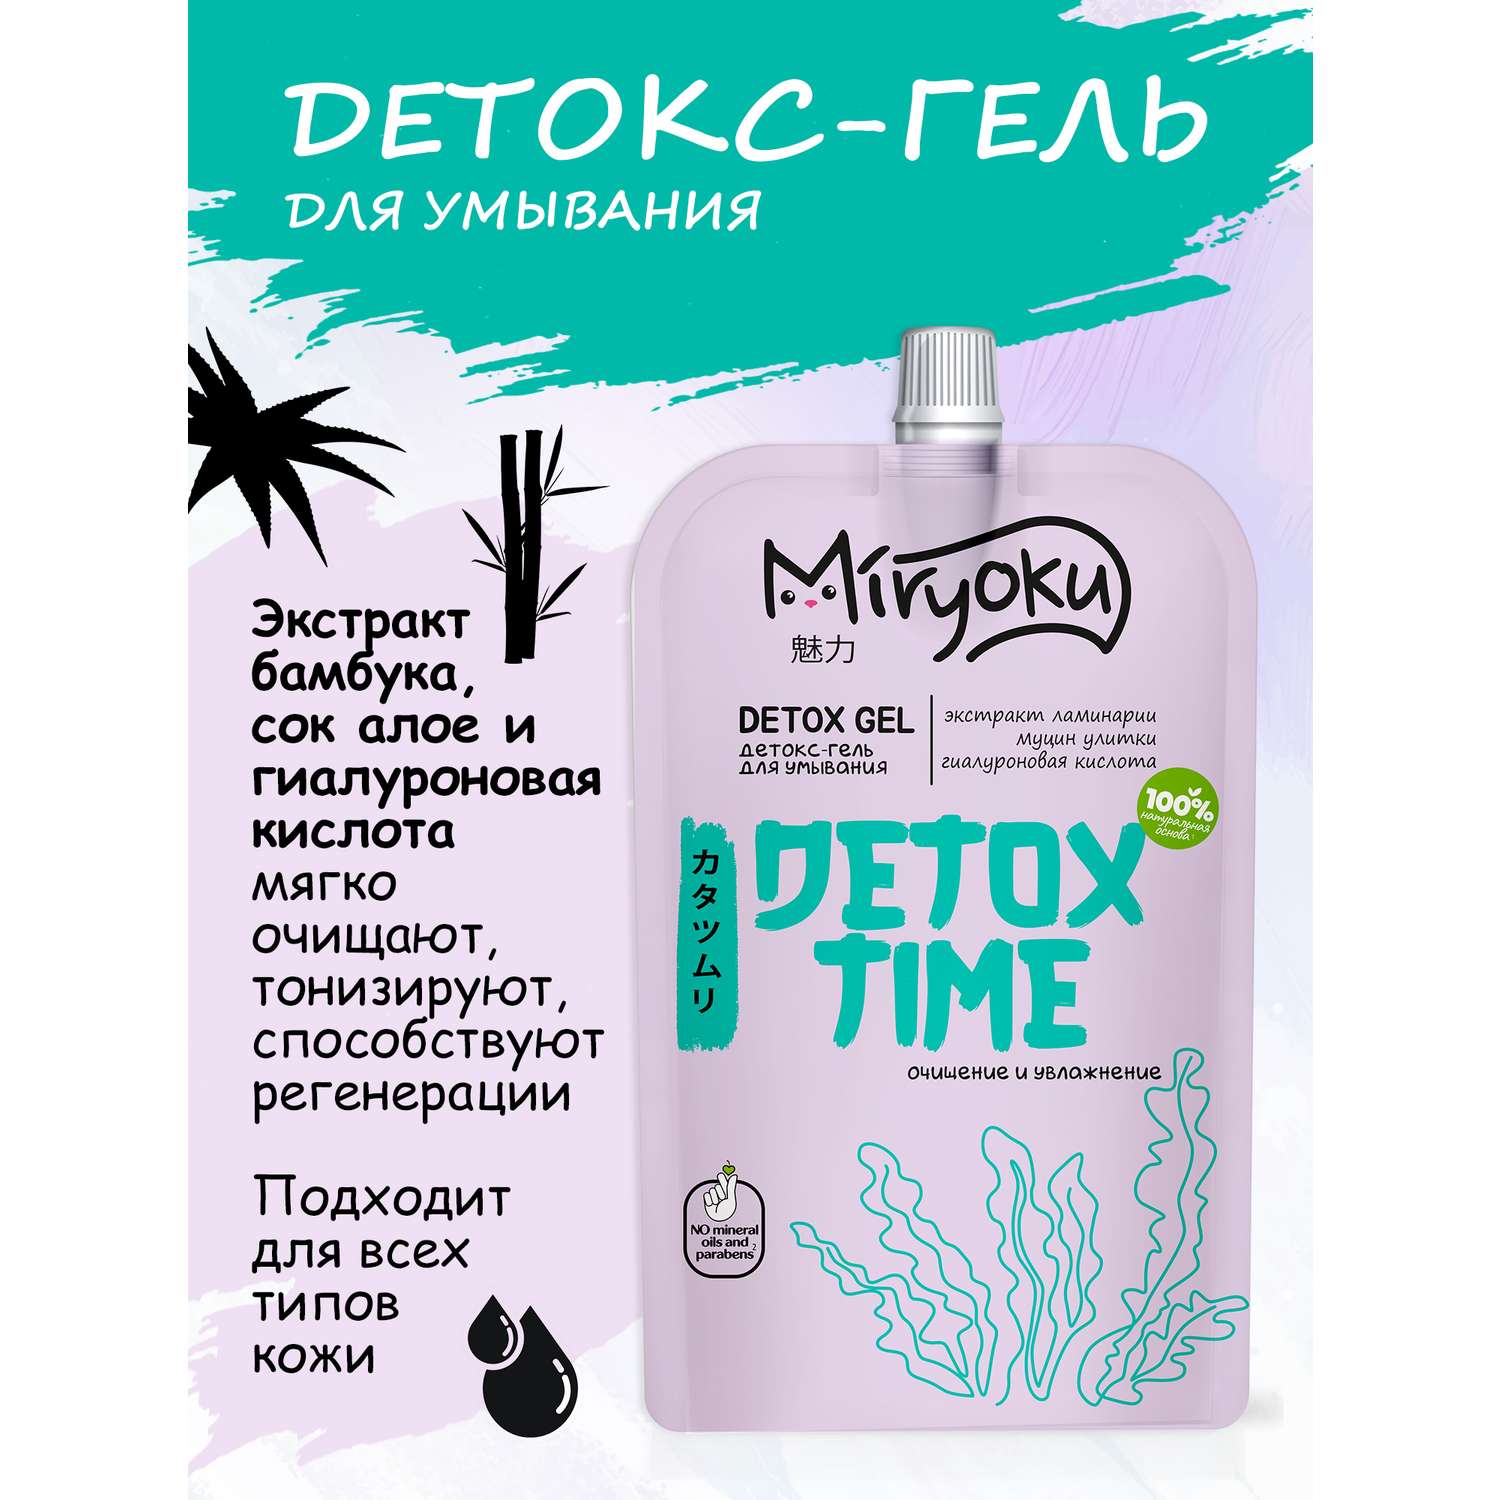 Набор MIRYOKU Face Cream Detox Gel Крем для лица и детокс-гель - фото 4